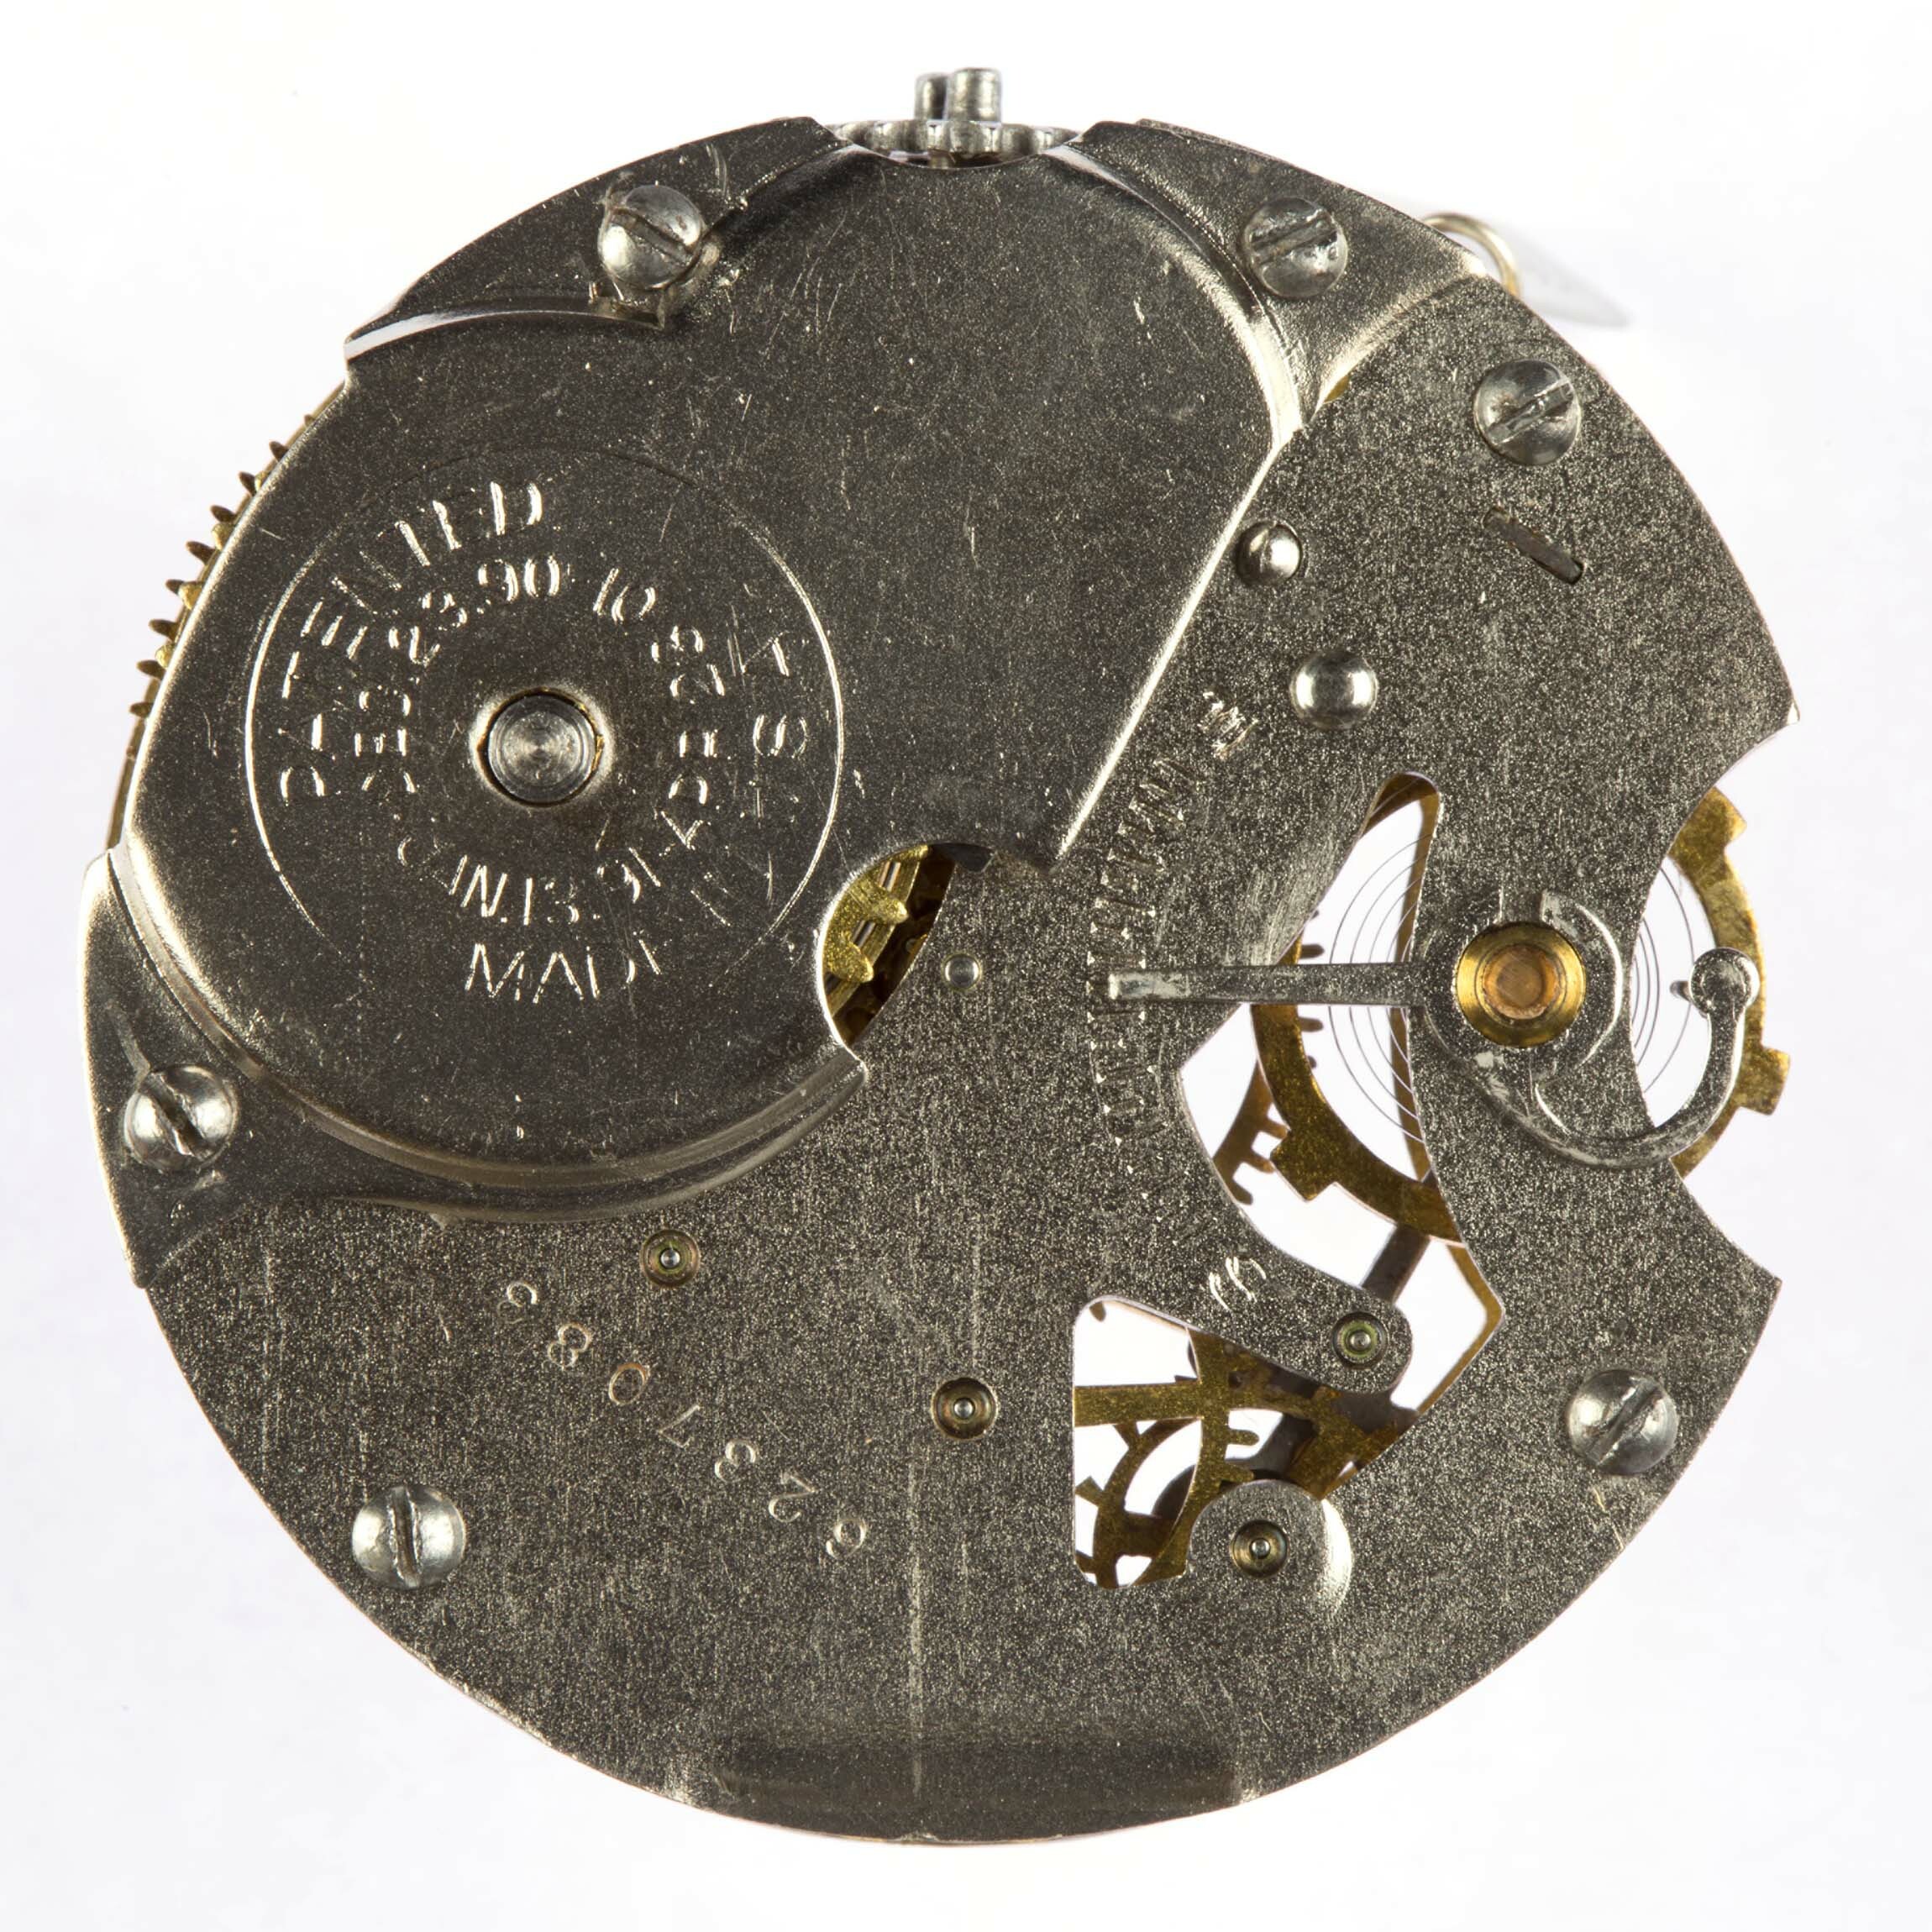 Taschenuhr Defiance, Ingersoll, USA, um 1902 (Deutsches Uhrenmuseum CC BY-SA)